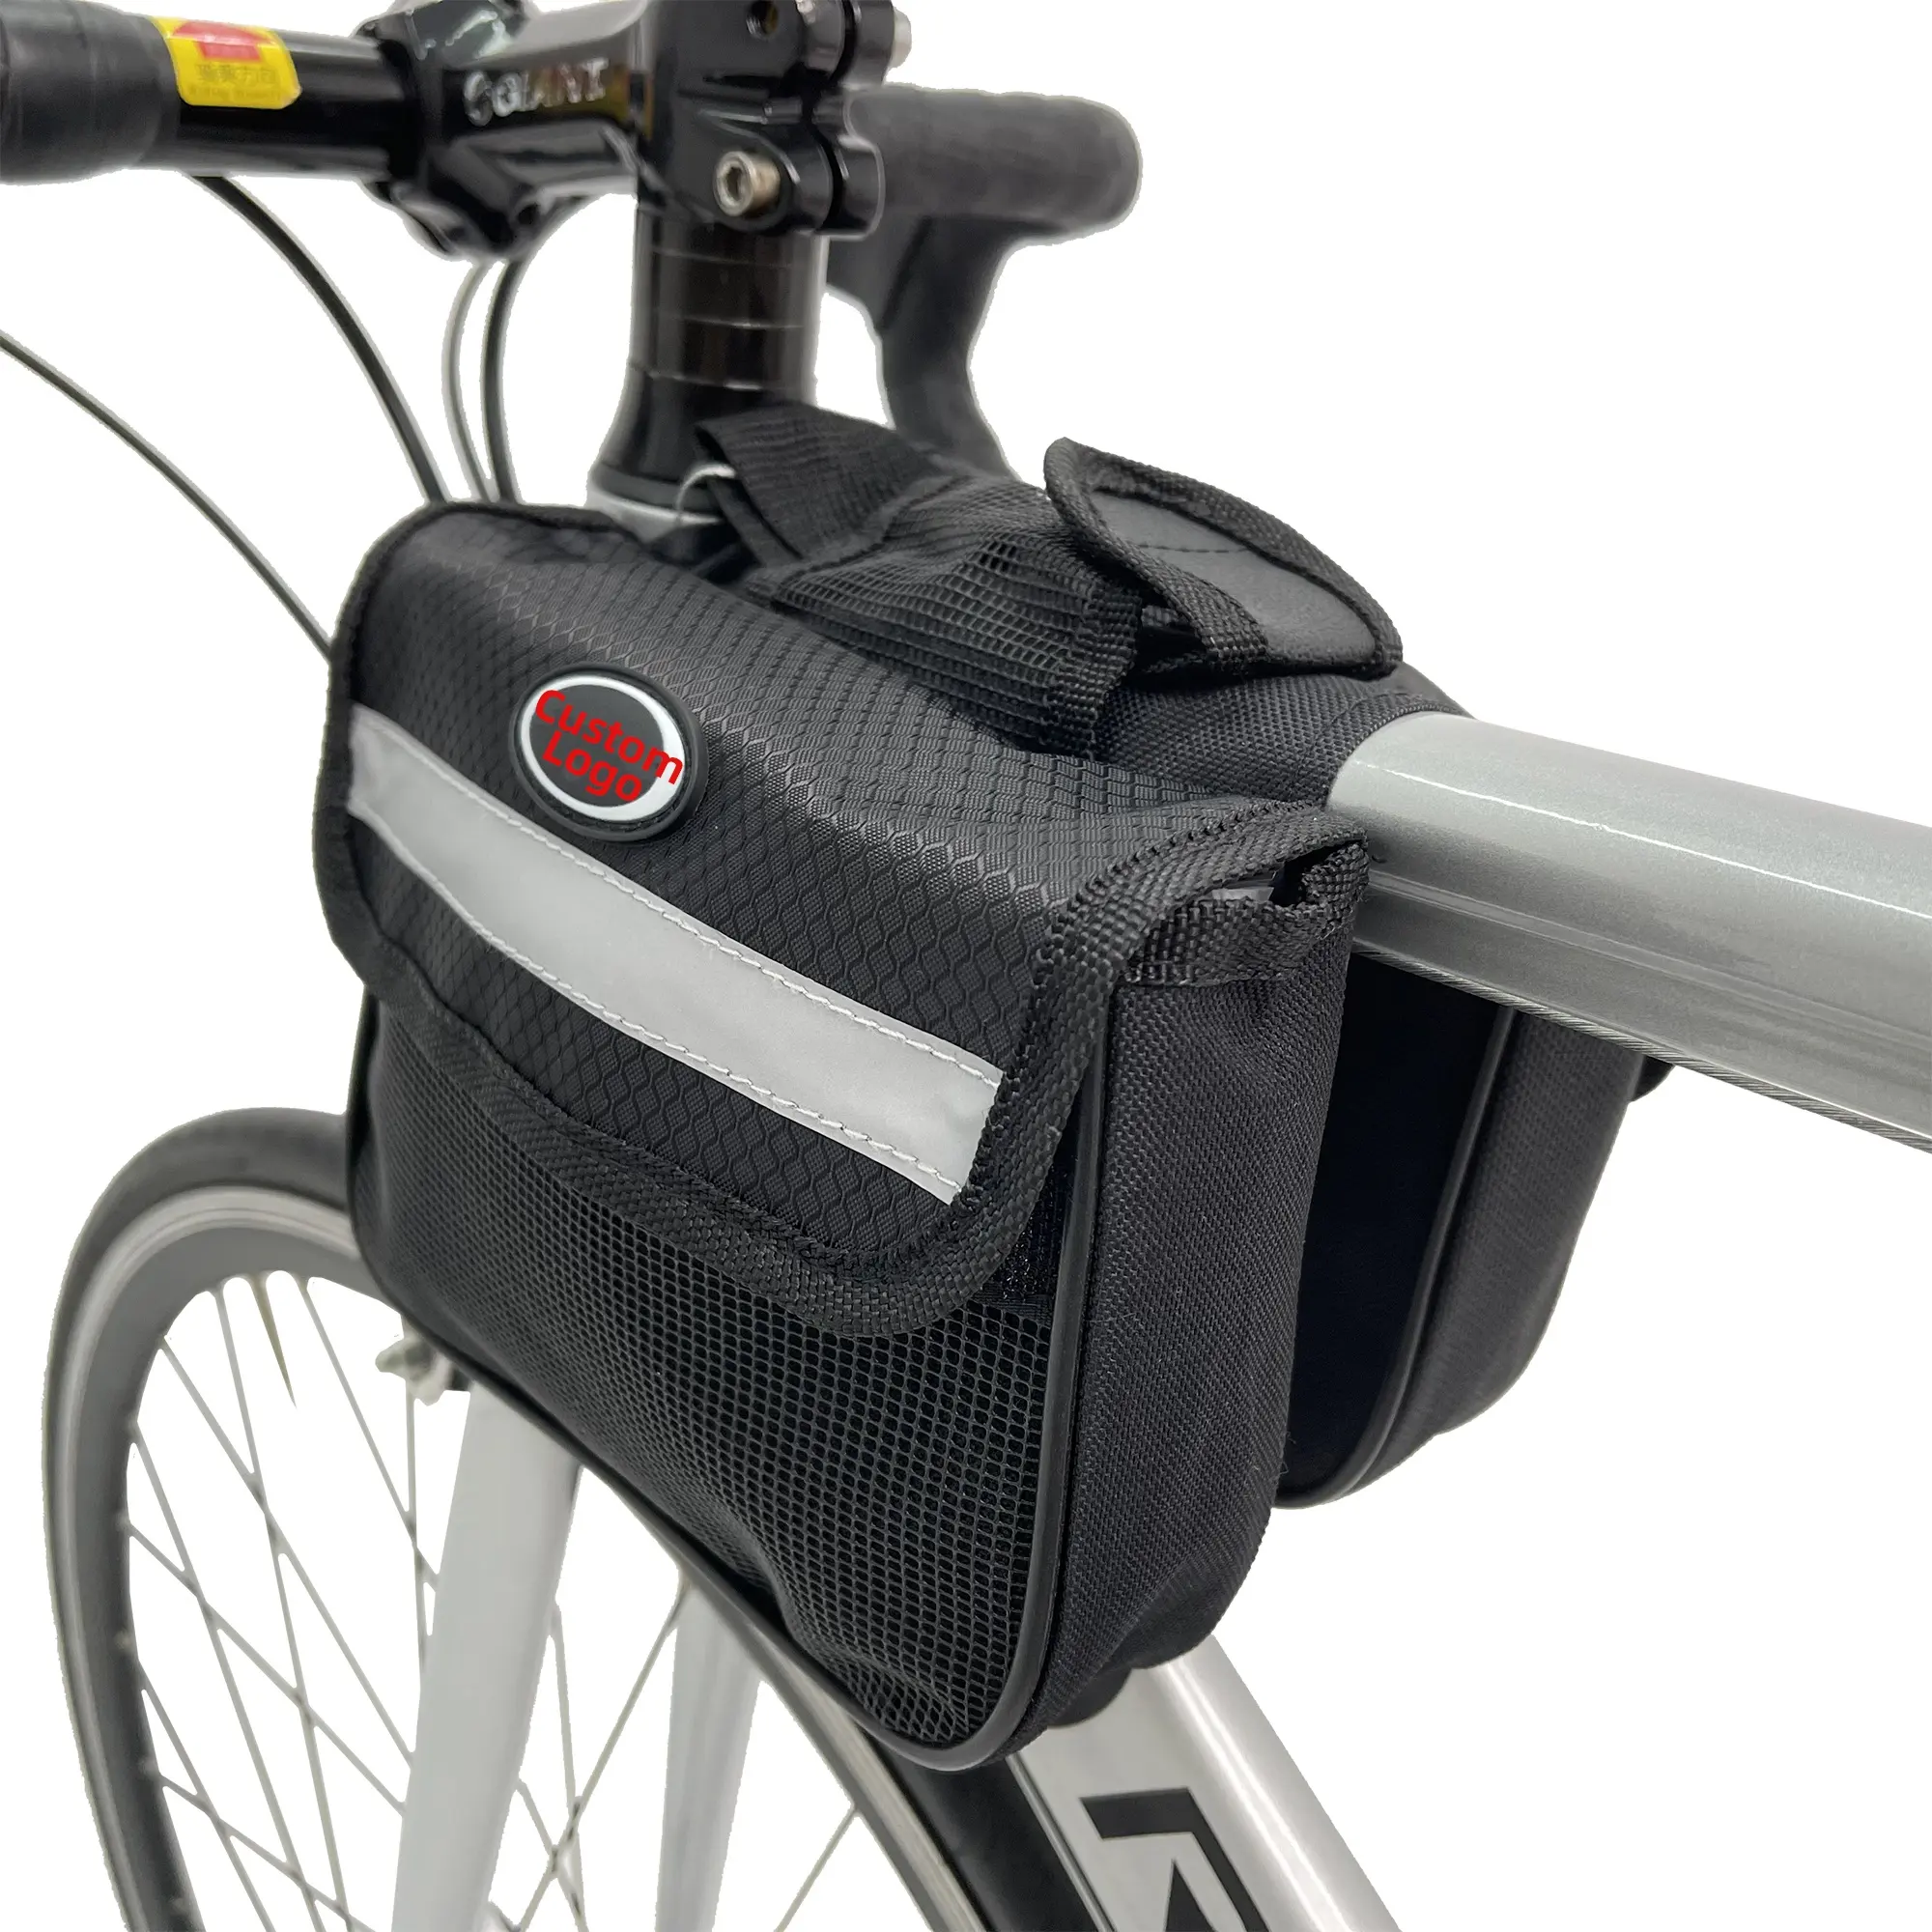 REYGEAK Factory Price Bike bag Bicycle Frame Bag Rainproof Front Bracket Package Waterproof Bag Outdoor Travel Storage Cycling